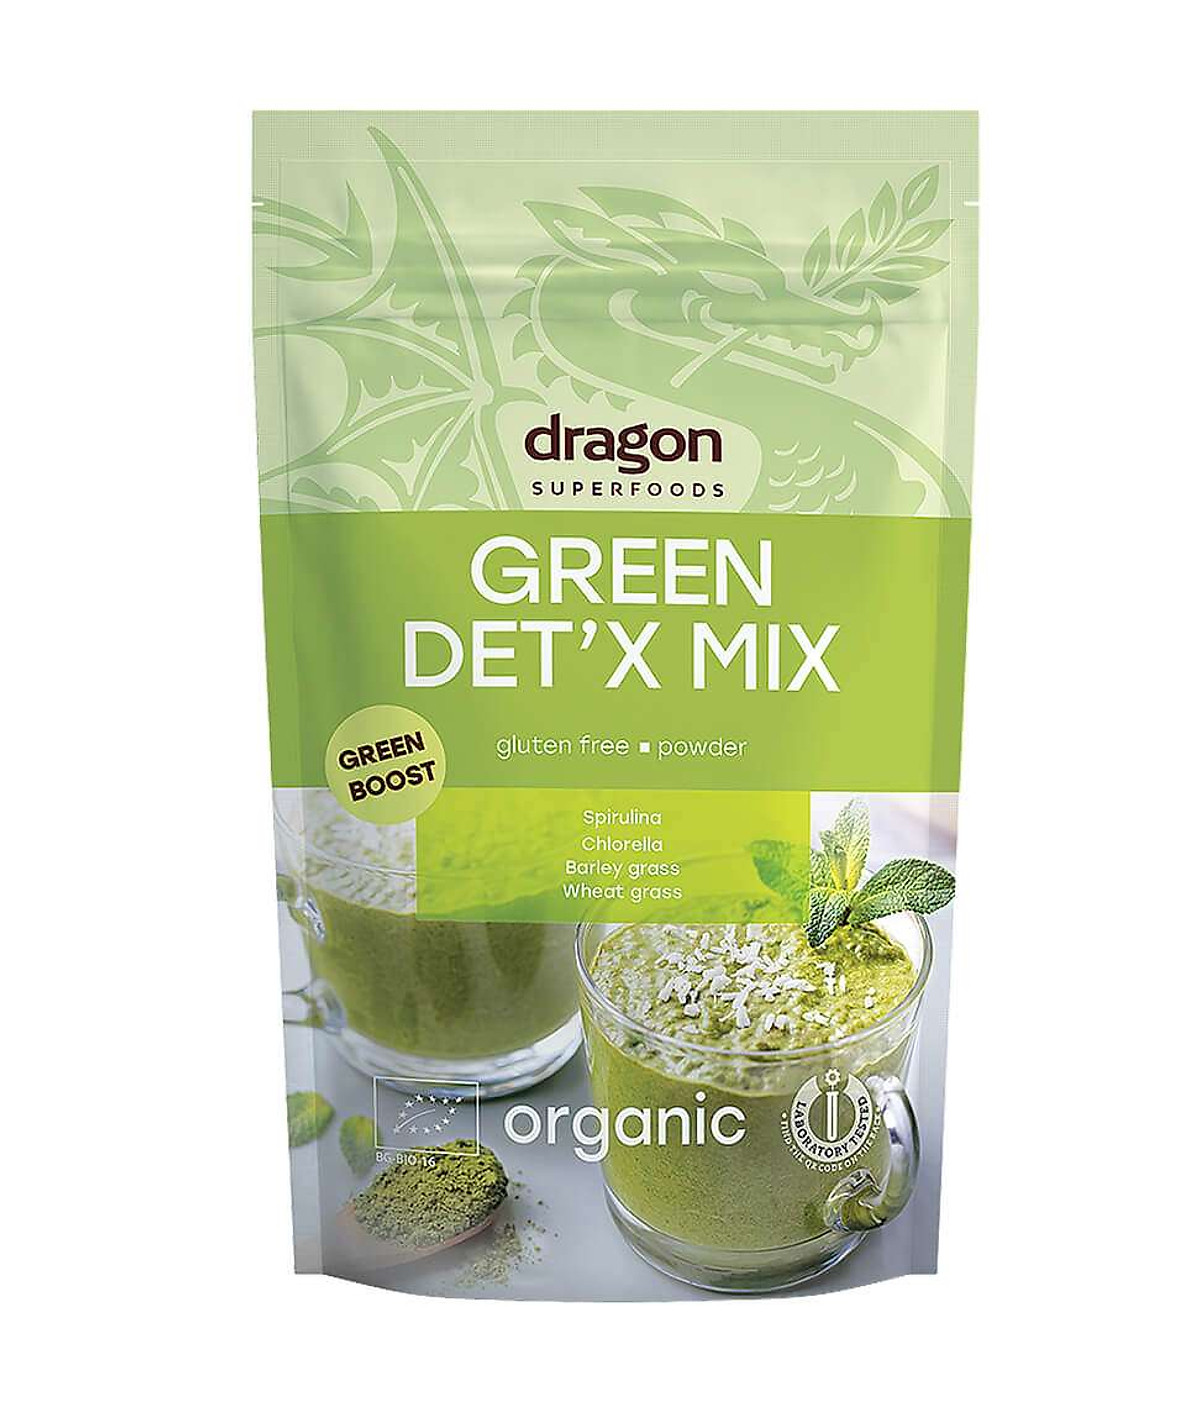 Bột xanh thải độc Green Detox Mix 200g Dragon Superfoods